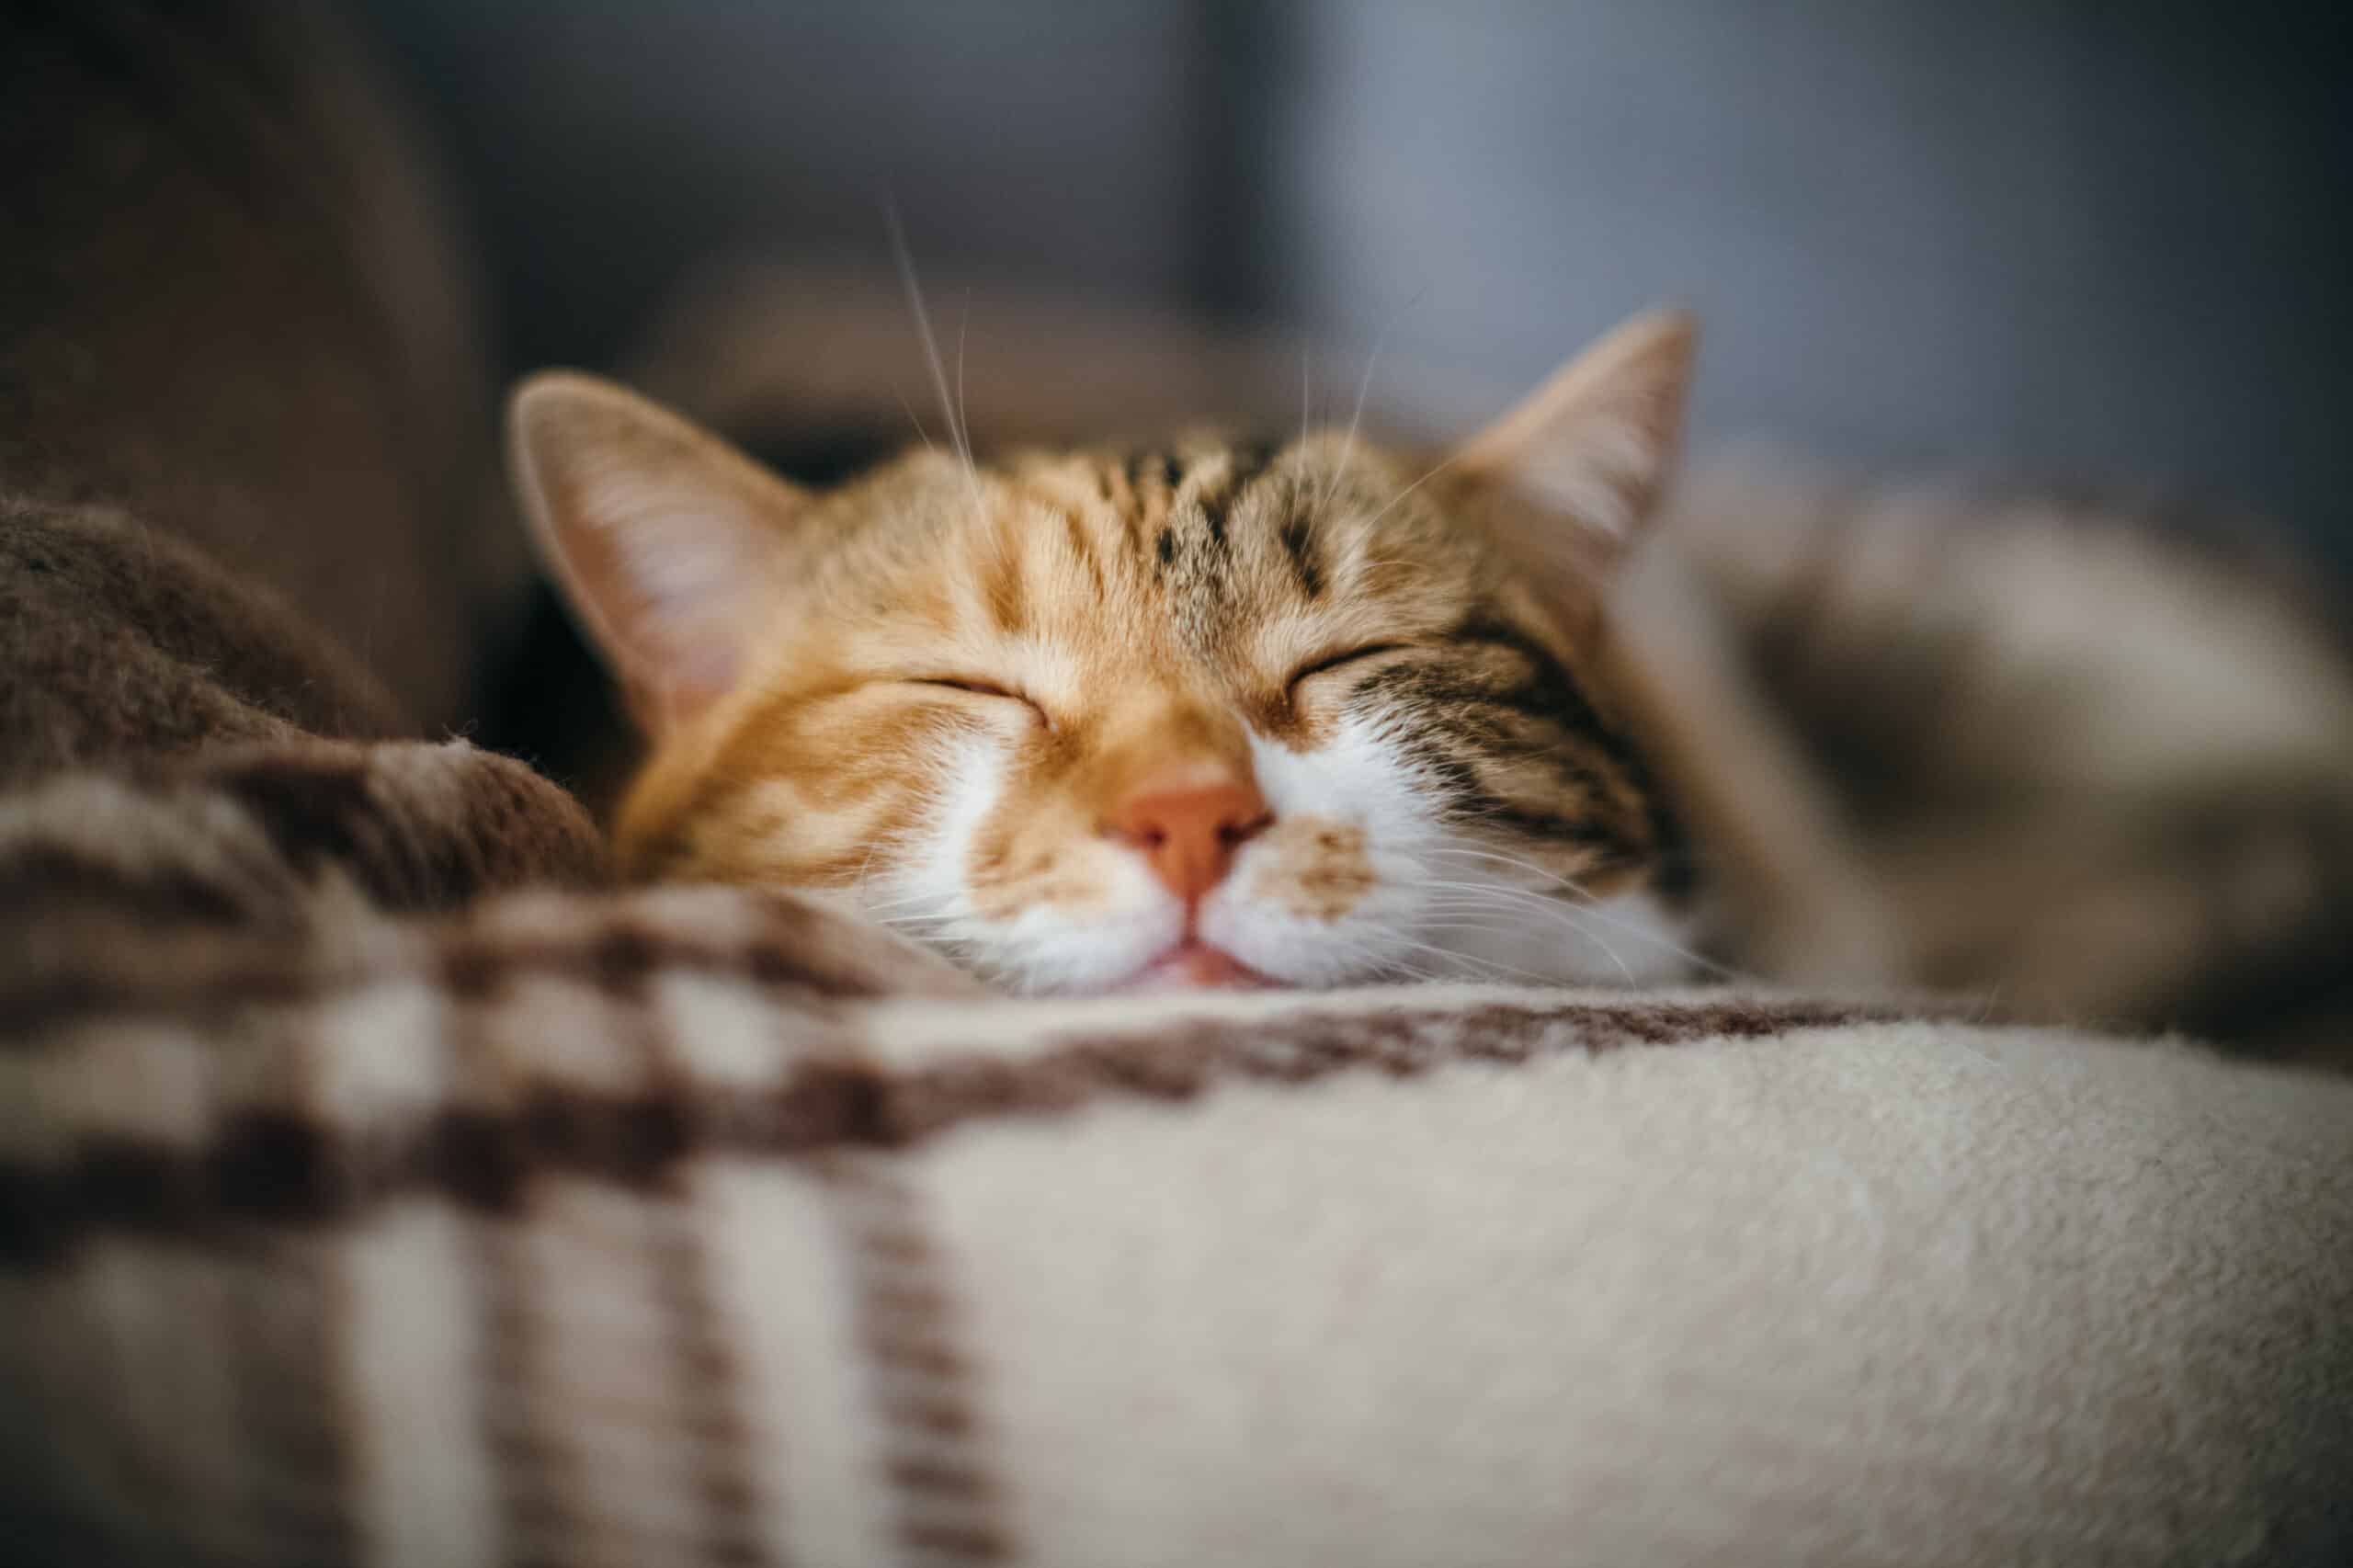 มุมมองด้านหน้าของแมวแสนสวยน่ารักนอนหลับอยู่ในความฝันของเธอ